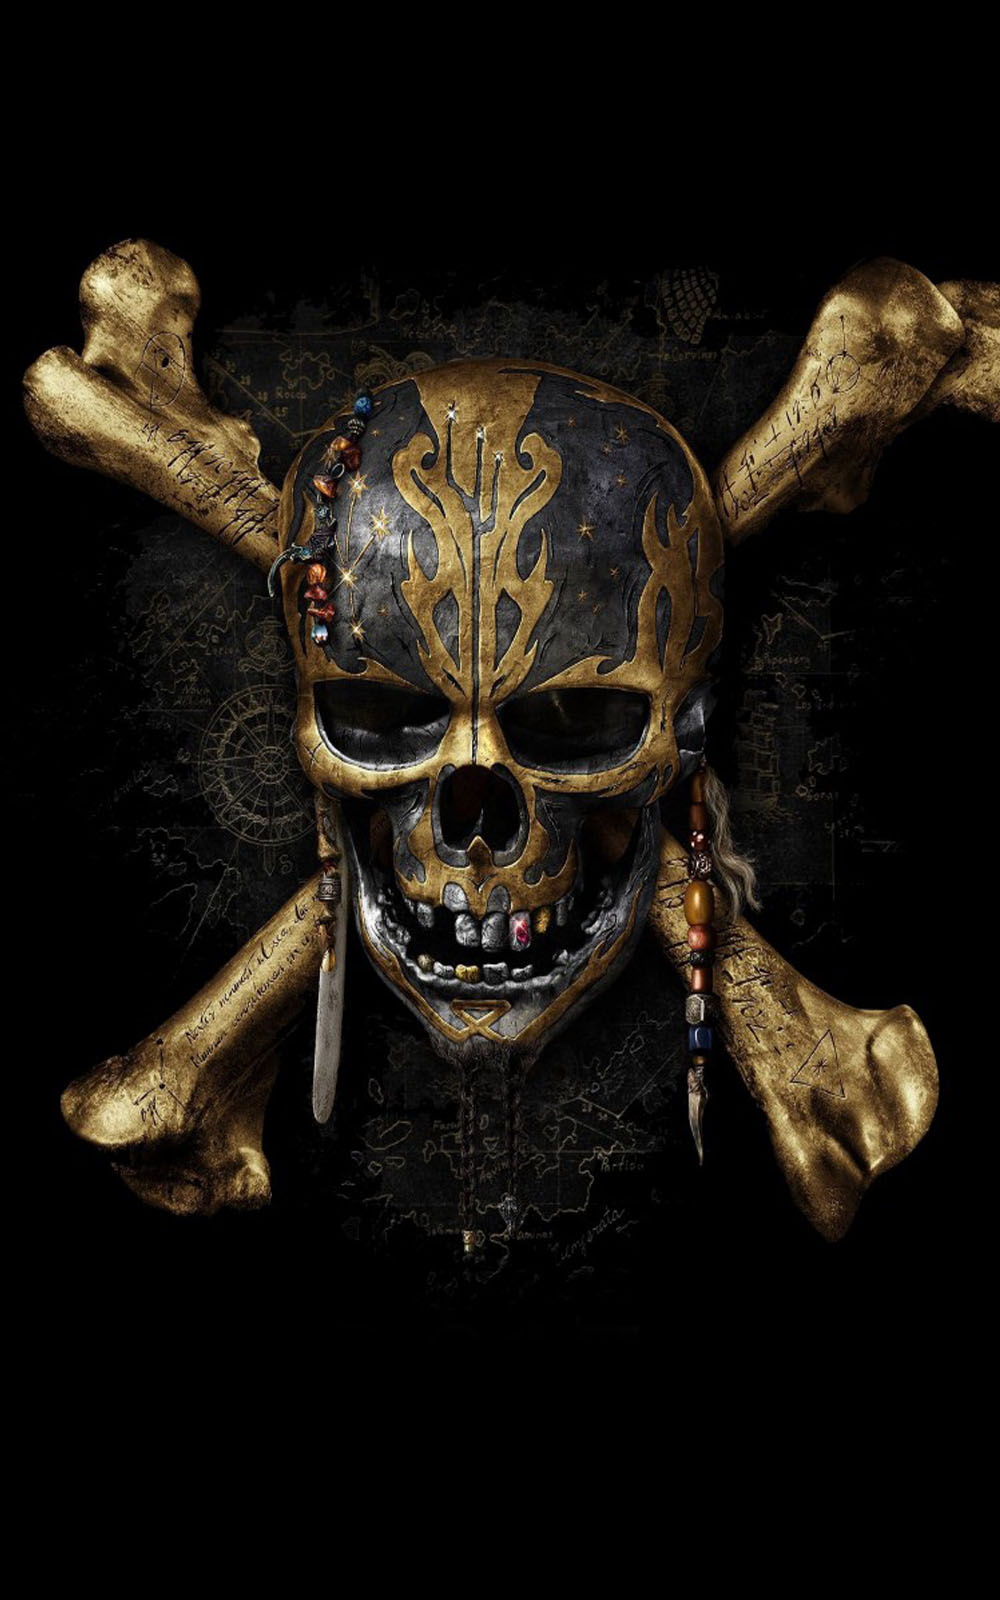 pirates of the caribbean wallpaper for android,skull,bone,skeleton,demon,illustration